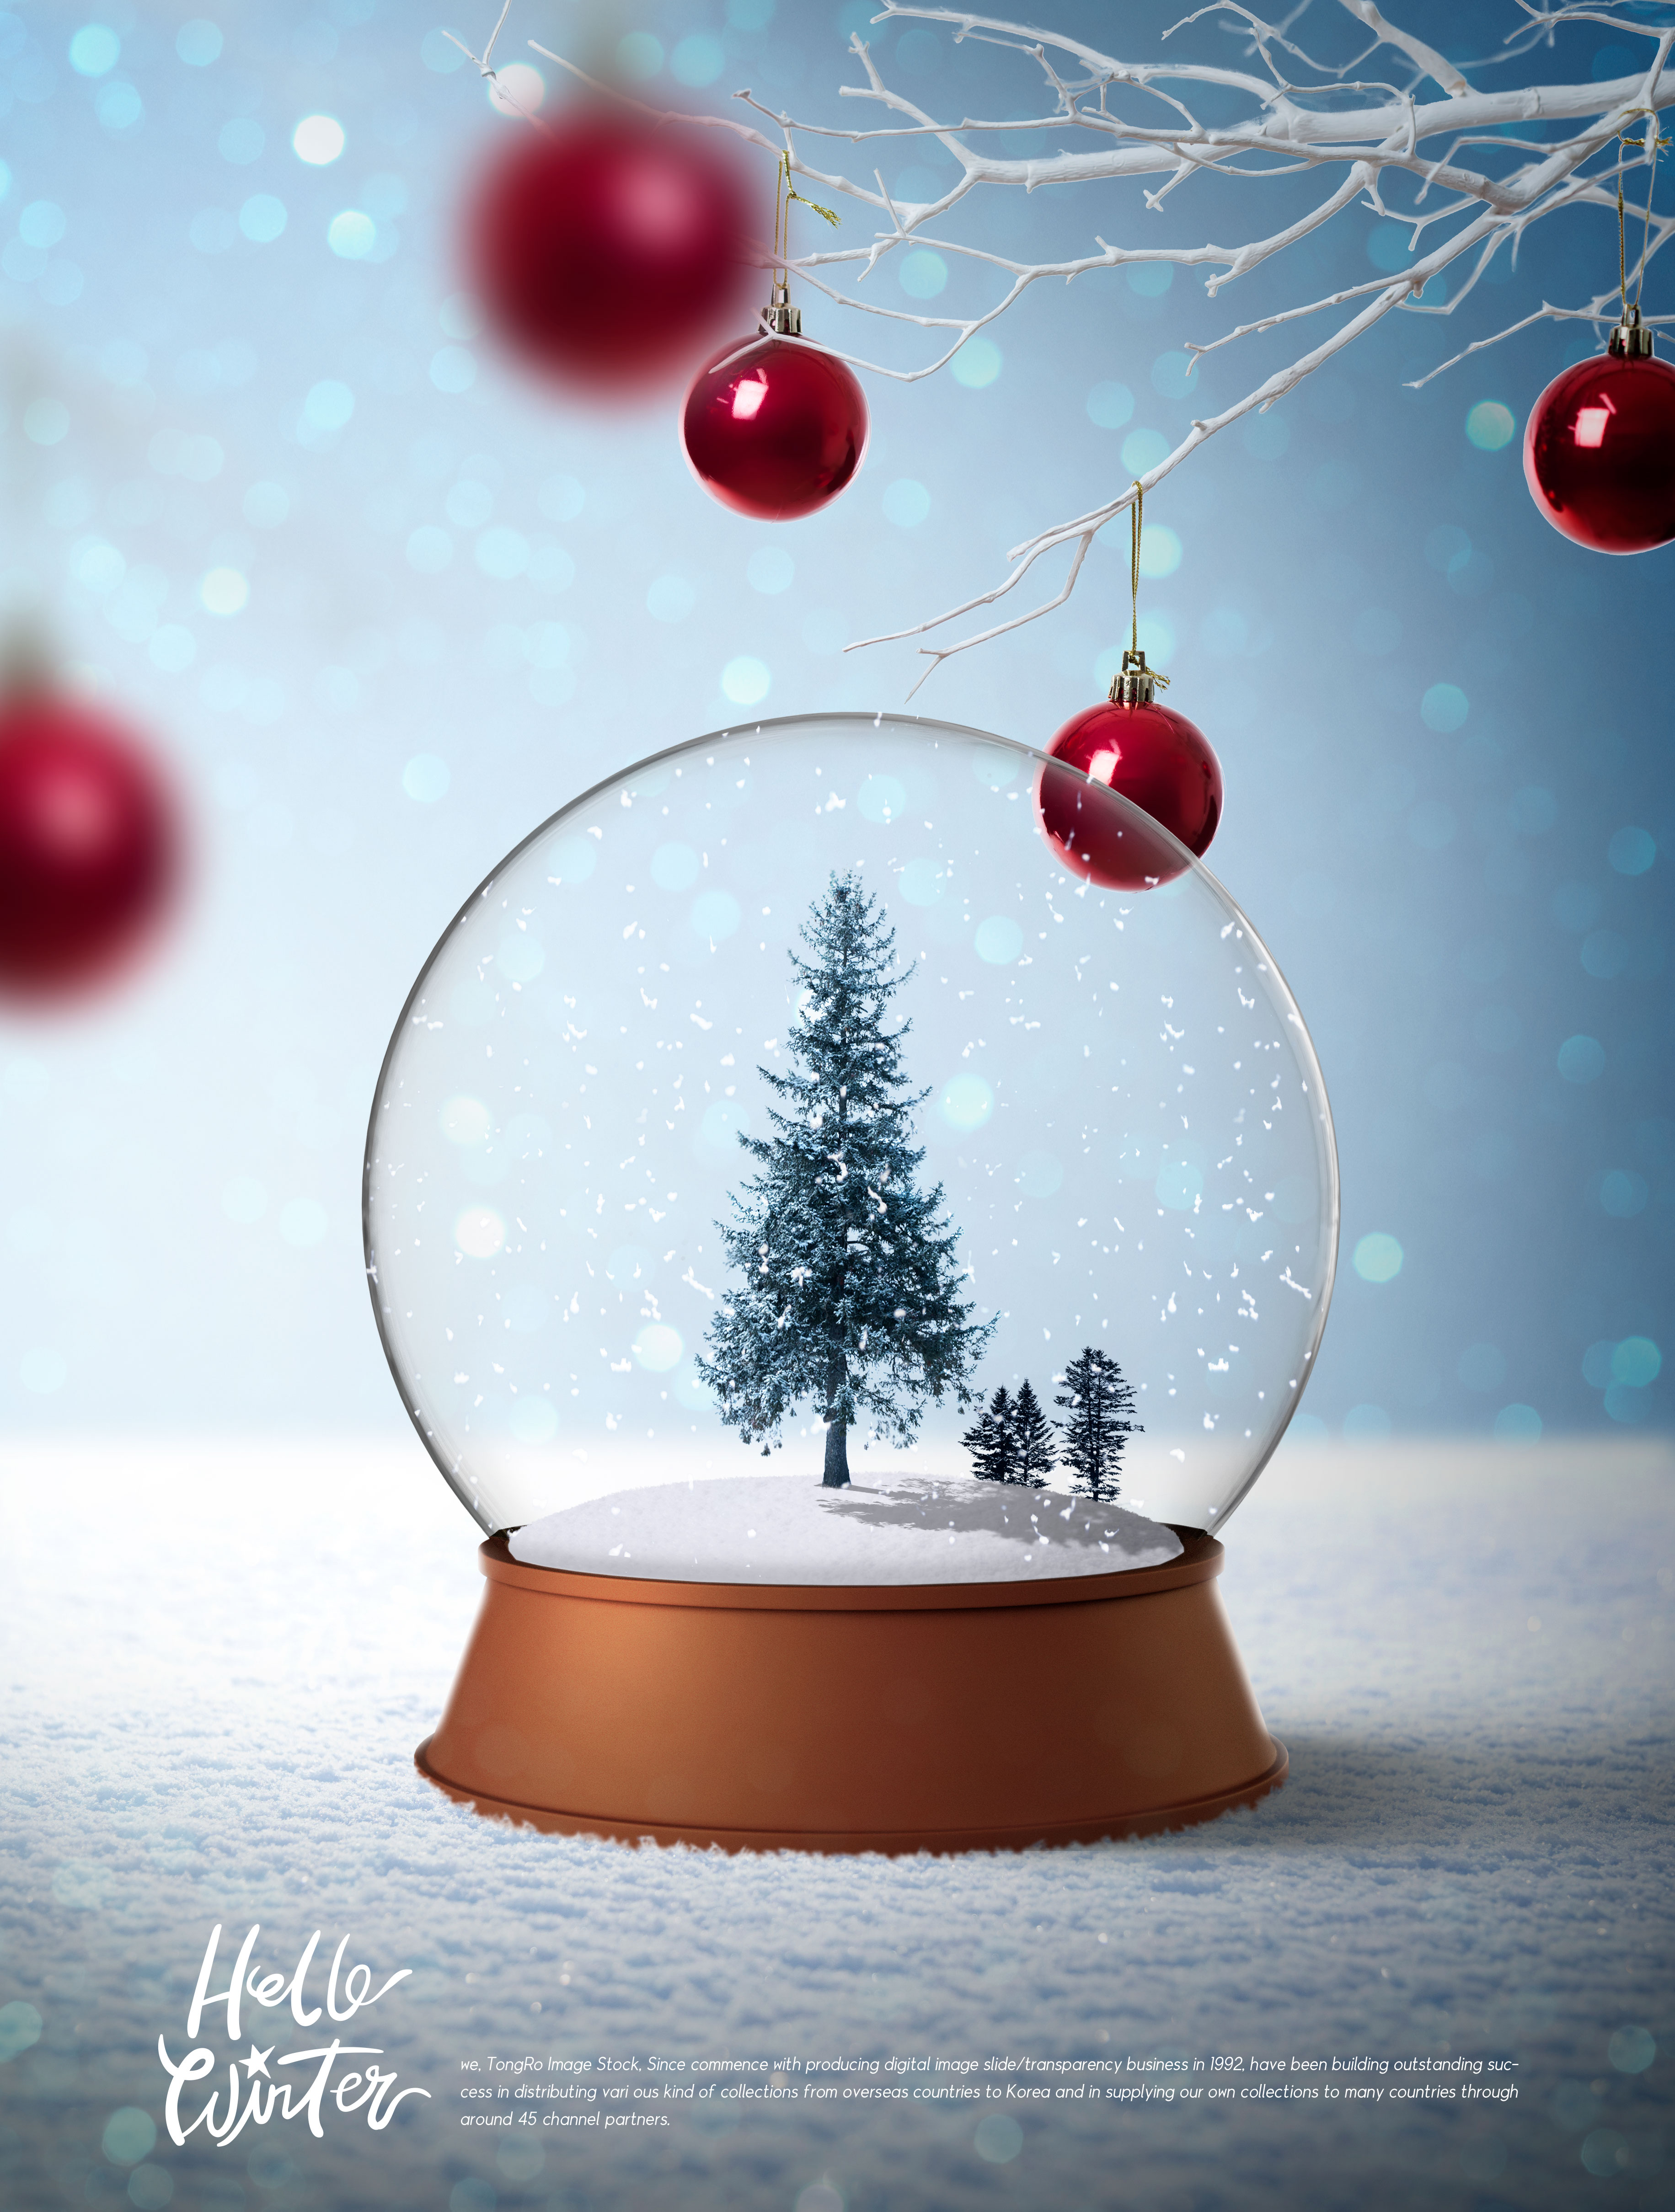 透明玻璃雪球冬季圣诞主题海报设计模板插图